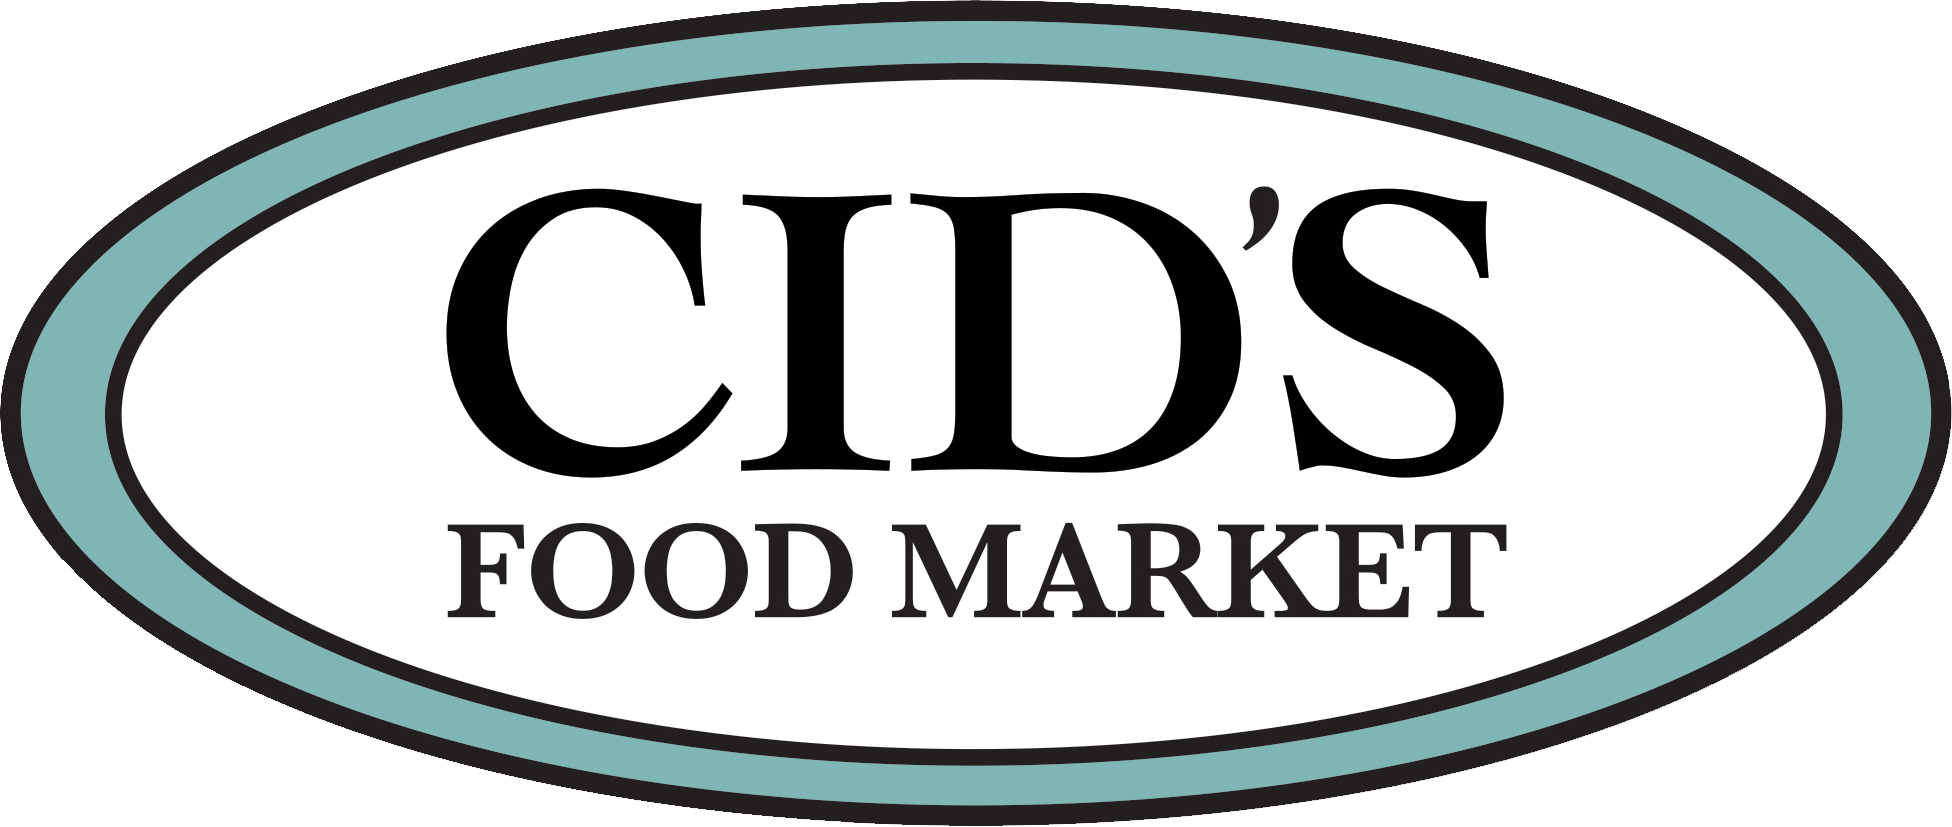 Cids Food Logo 2.png